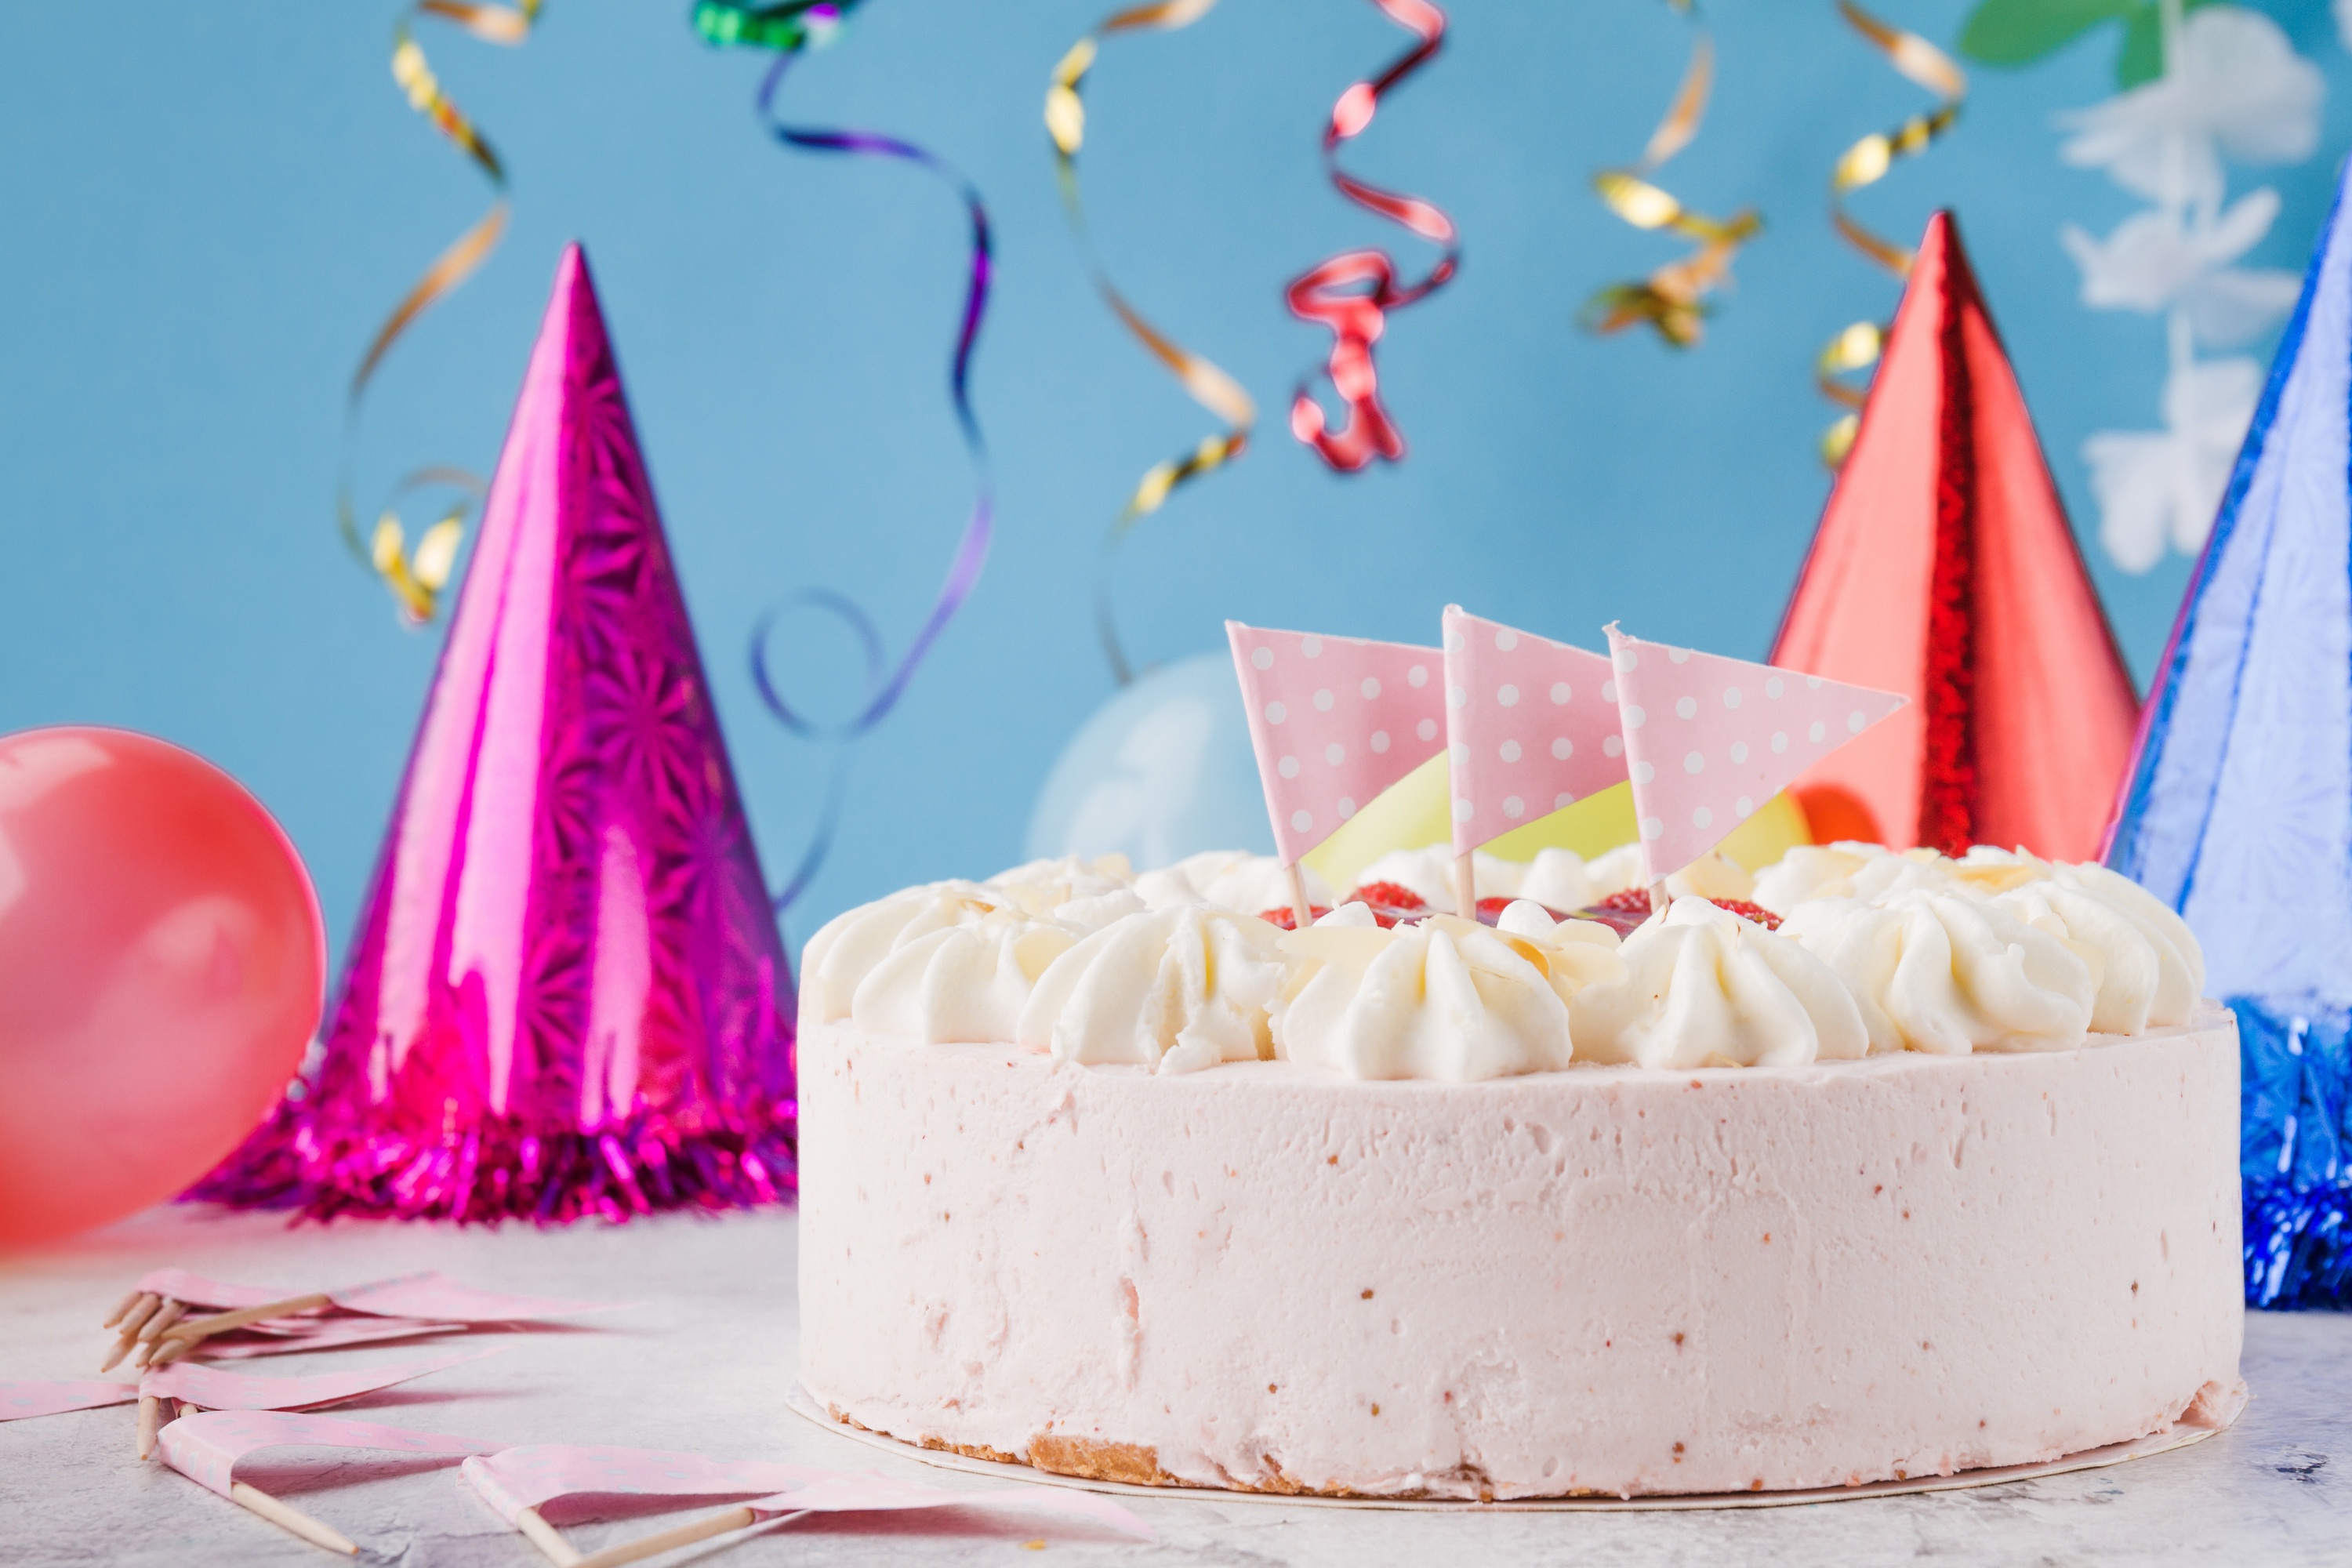 Праздники юбилеи дни рождения. Праздничный торт. Красивые тортики на день рождения. Тортик с днем рождения. Праздничный тортик с днем рождения.